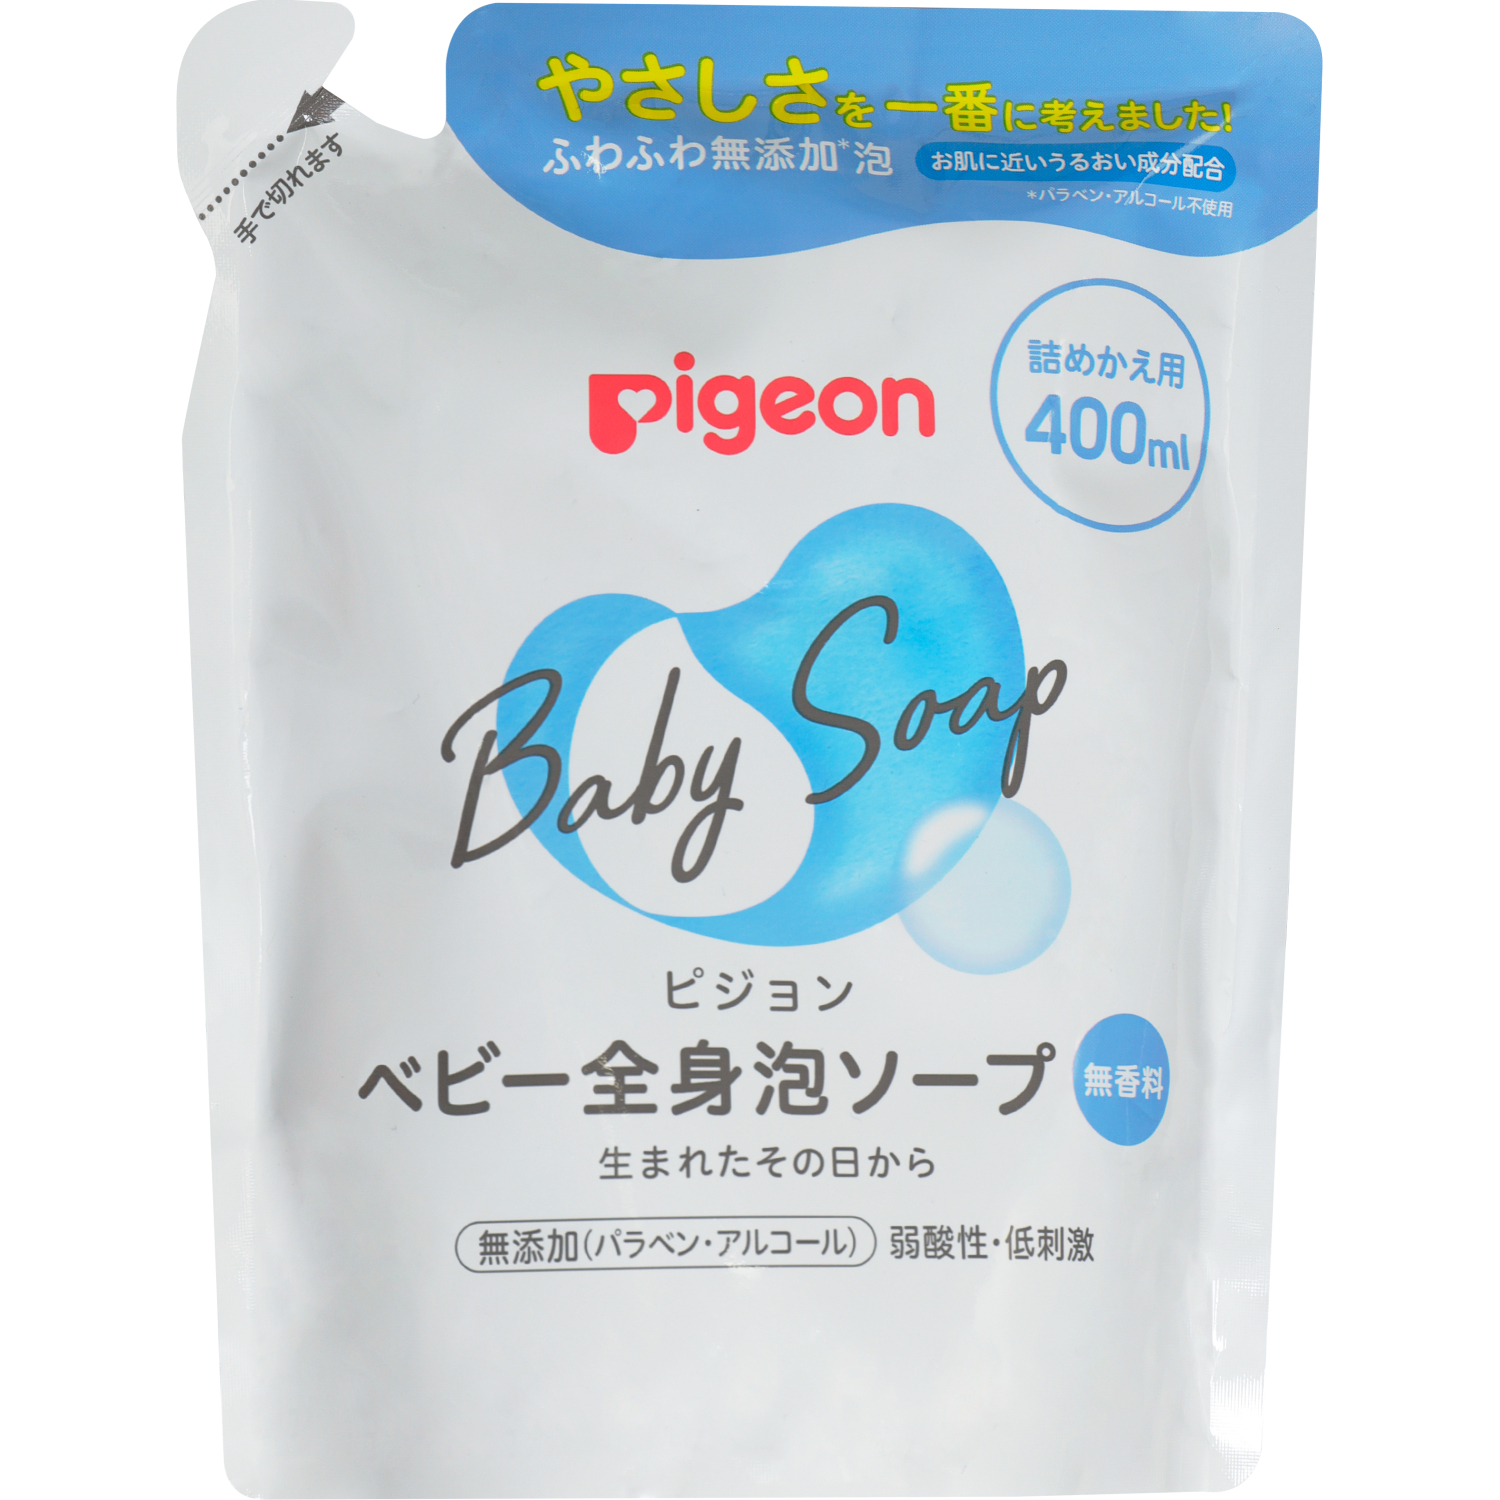 Мыло-пенка Pigeon для младенцев сменный блок 400 мл мыло пенка pigeon для младенцев 500 мл